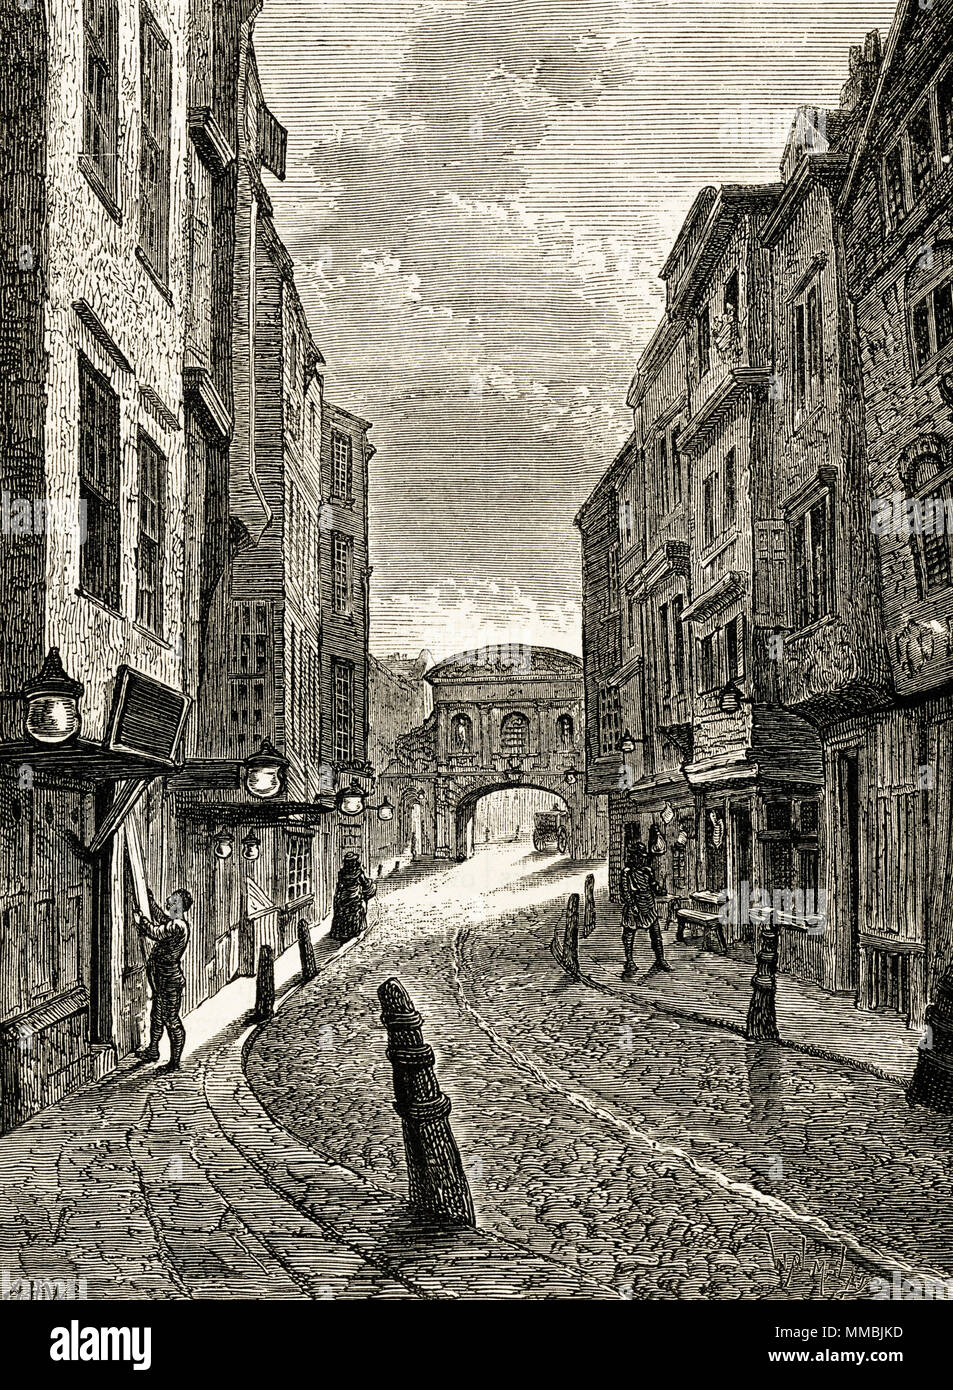 Butcher's Row, London, England, UK en 1800. 19ème siècle gravure victorienne circa 1878 Banque D'Images